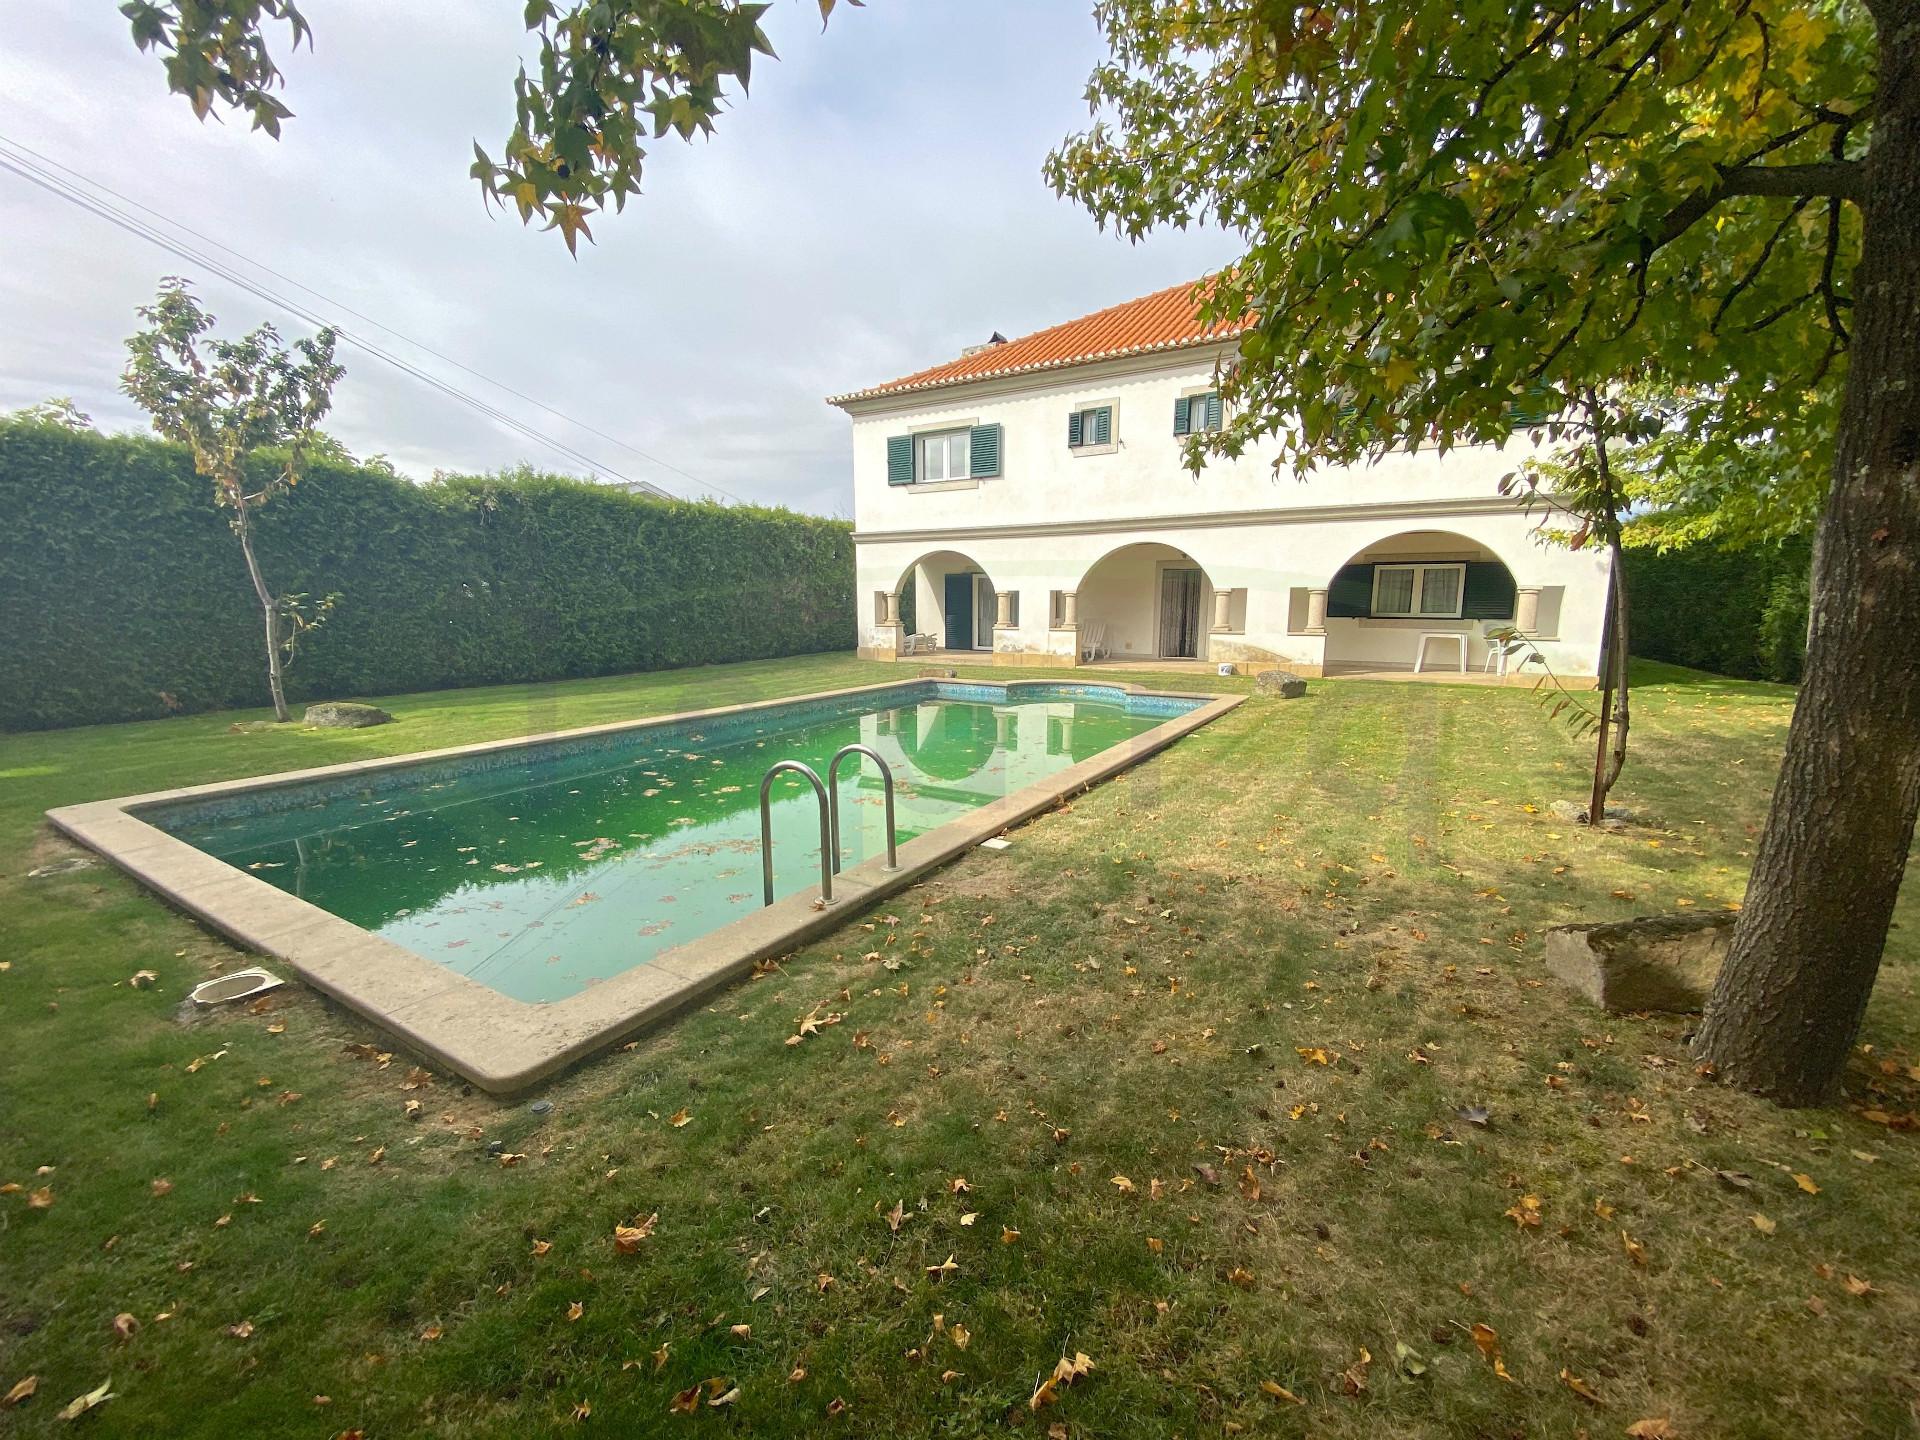 Imponente casa de família com piscina localizada a 6km do Centro de Vila Real